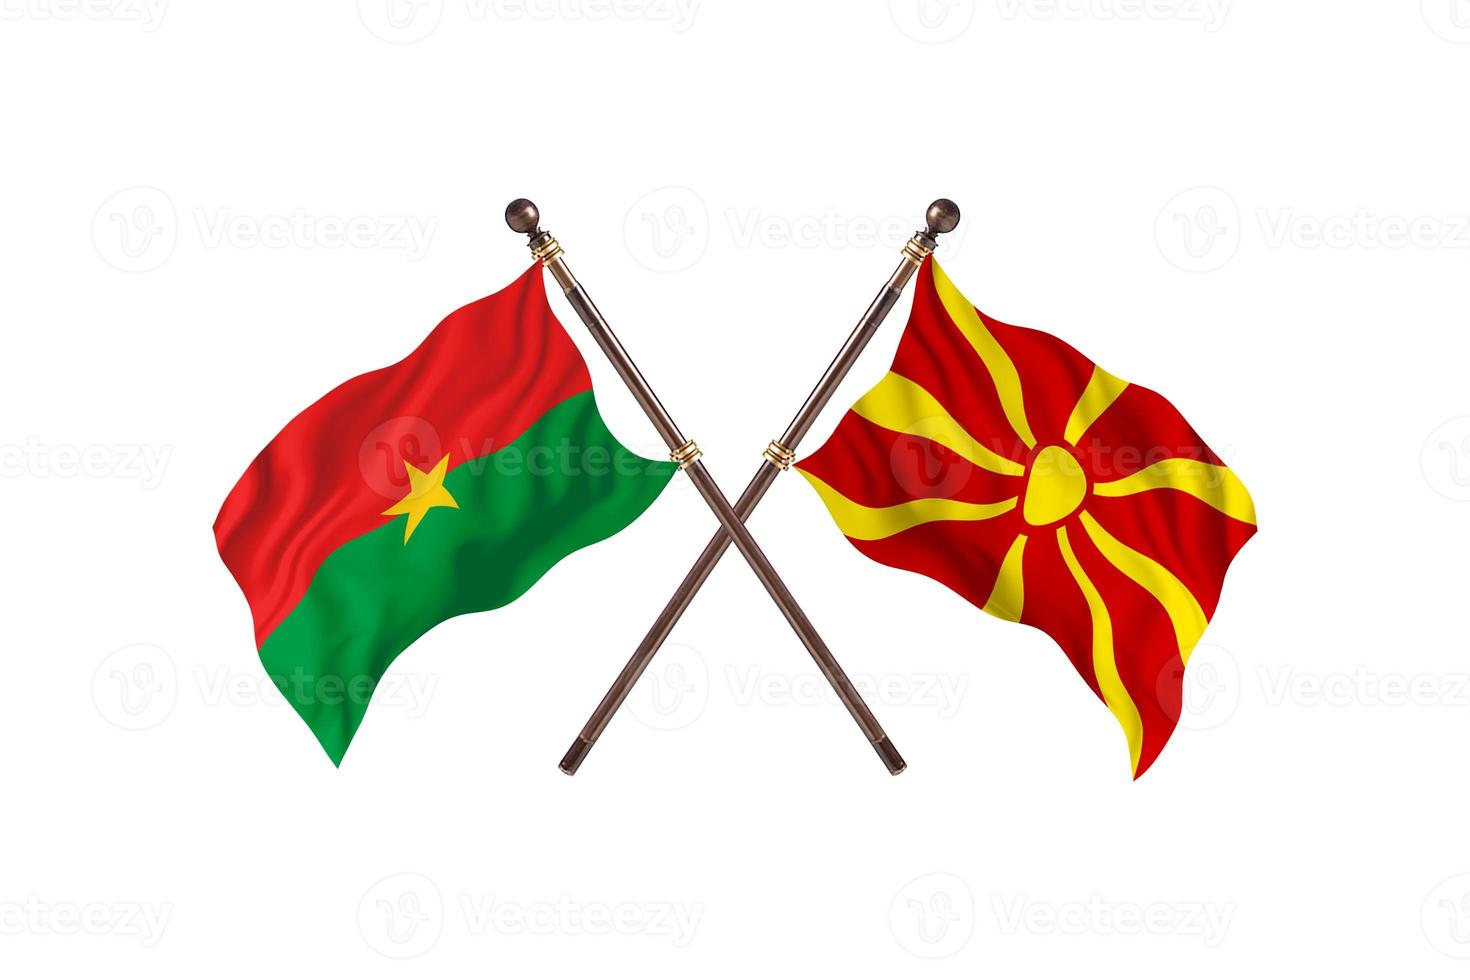 burkina faso contre macédoine deux drapeaux de pays photo